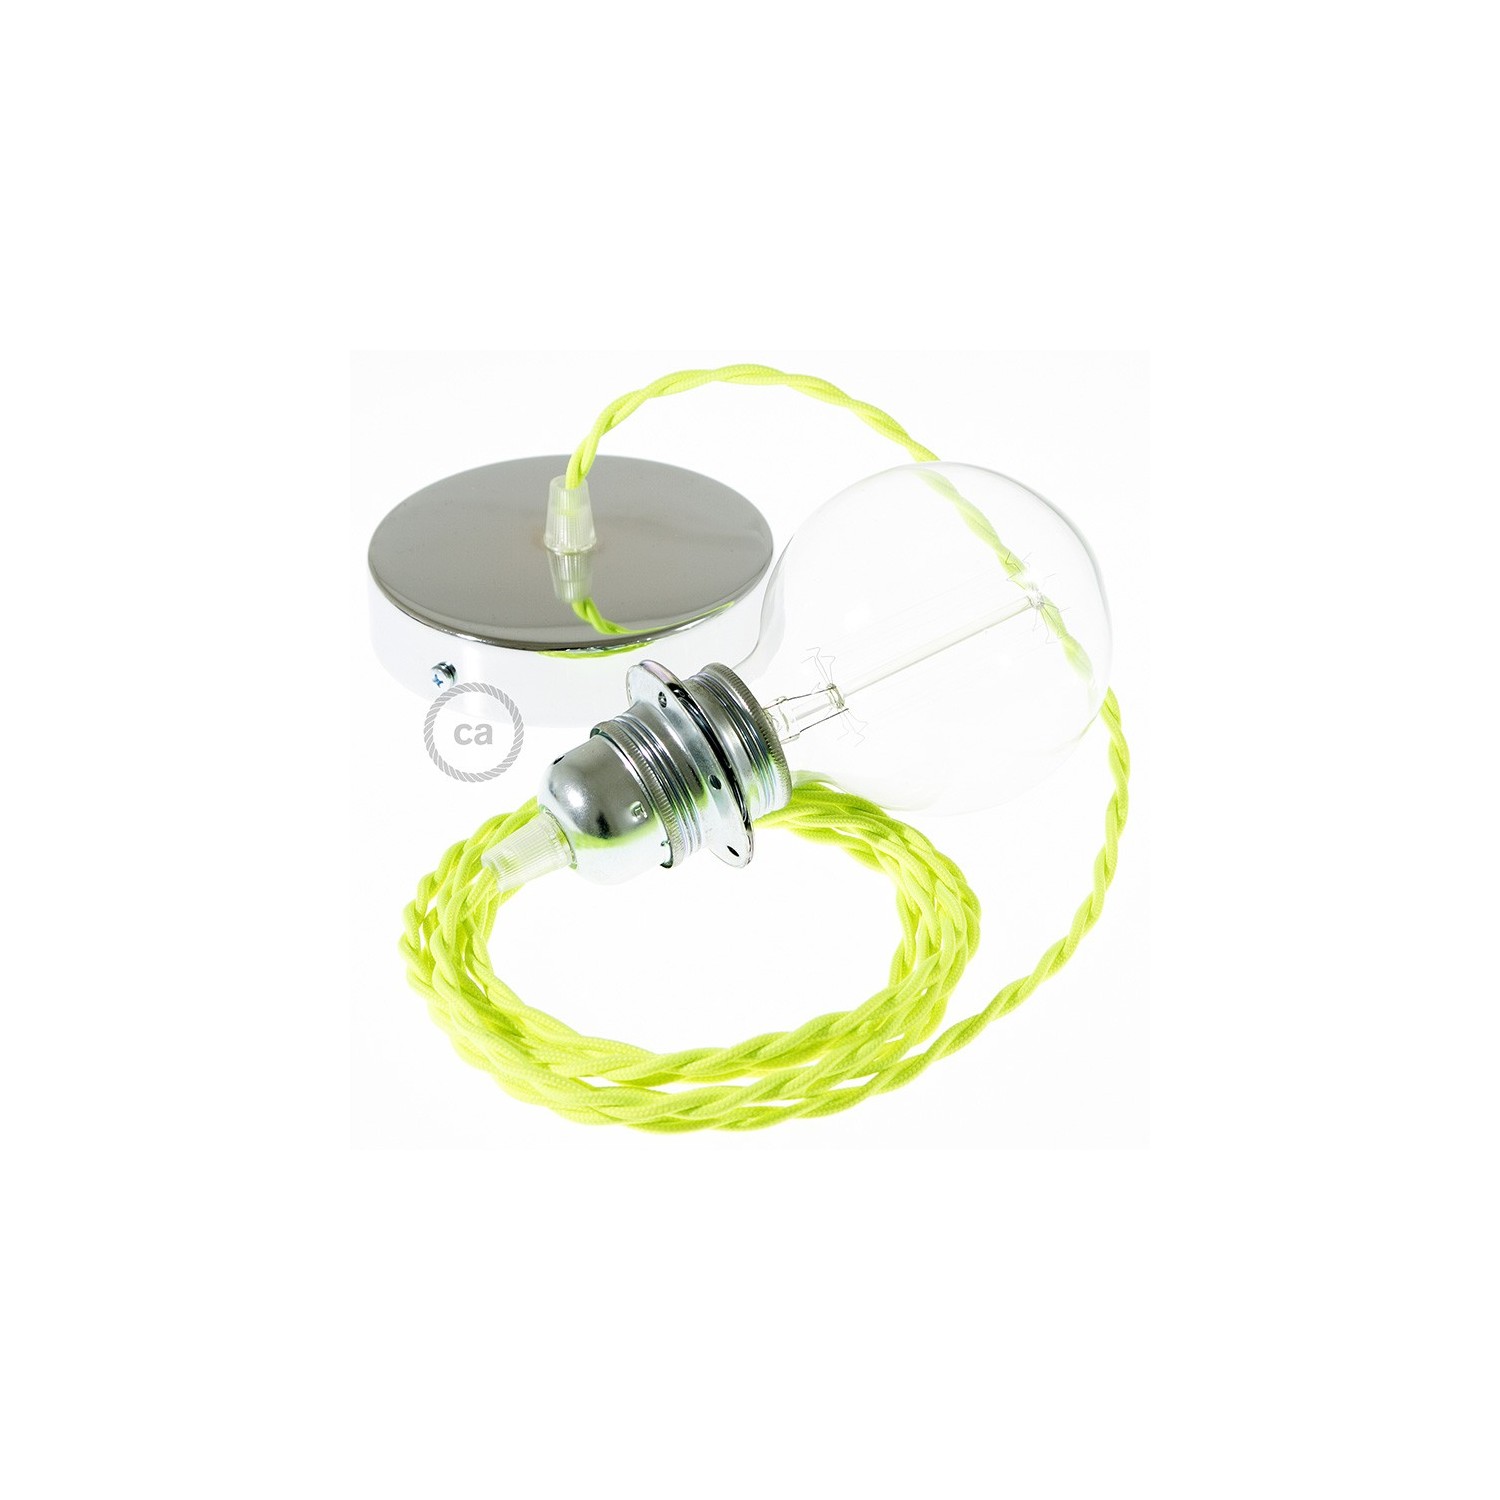 Verlichtingspendel E27 geschikt voor lampenkap. Hanglamp met gevlochten fluo geel viscose textielkabel – TF10